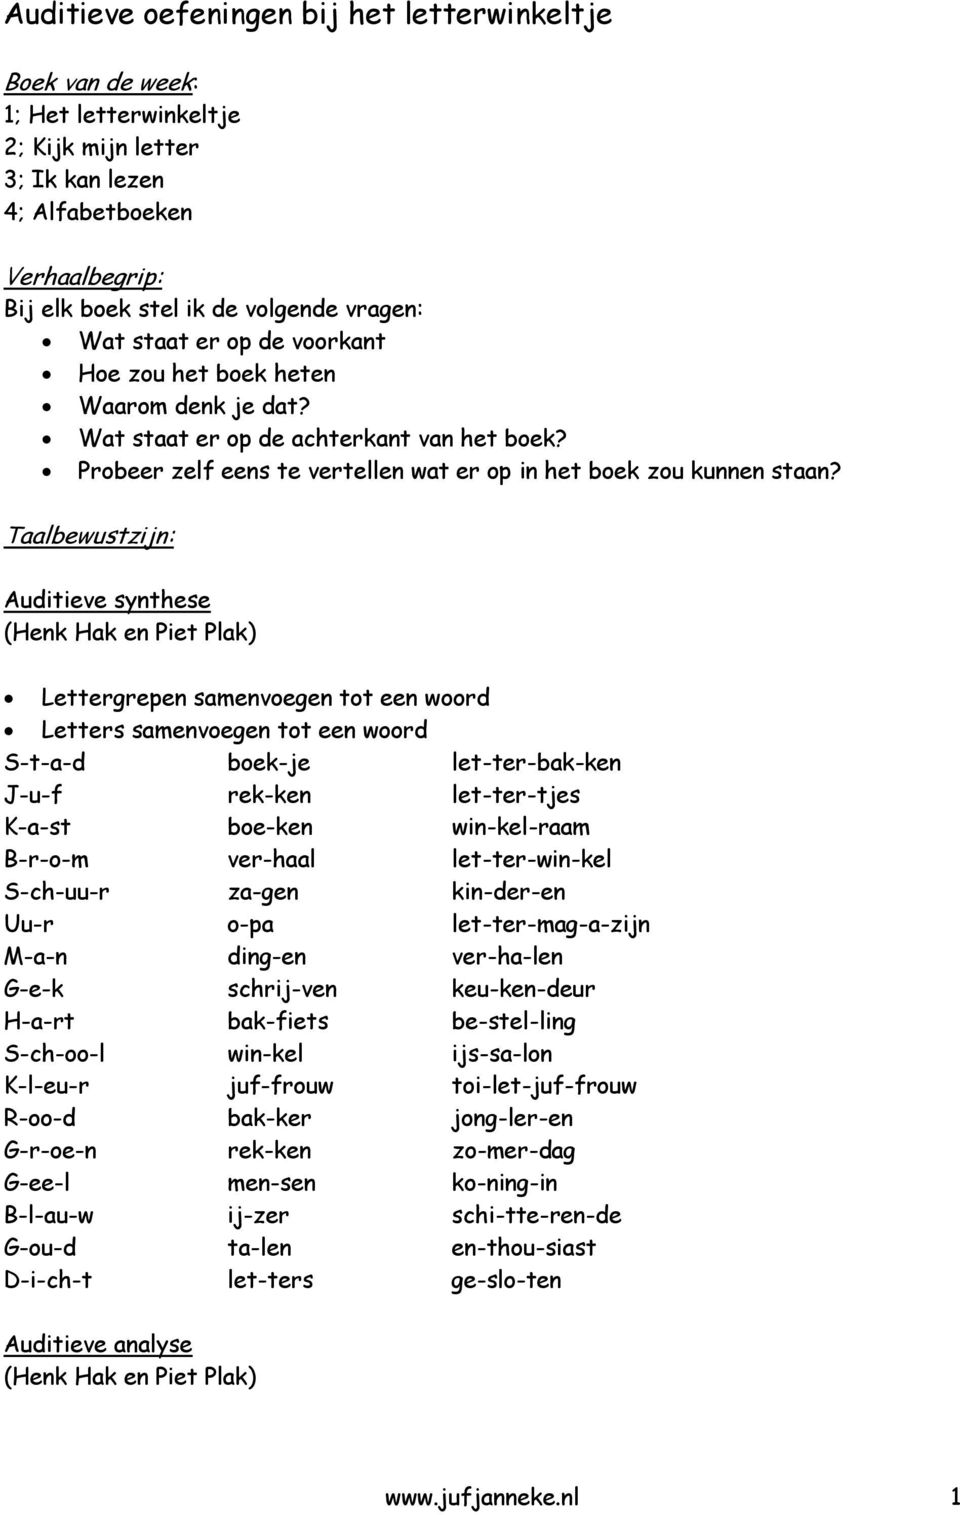 Taalbewustzijn: Auditieve synthese (Henk Hak en Piet Plak) Lettergrepen samenvoegen tot een woord Letters samenvoegen tot een woord S-t-a-d boek-je let-ter-bak-ken J-u-f rek-ken let-ter-tjes K-a-st